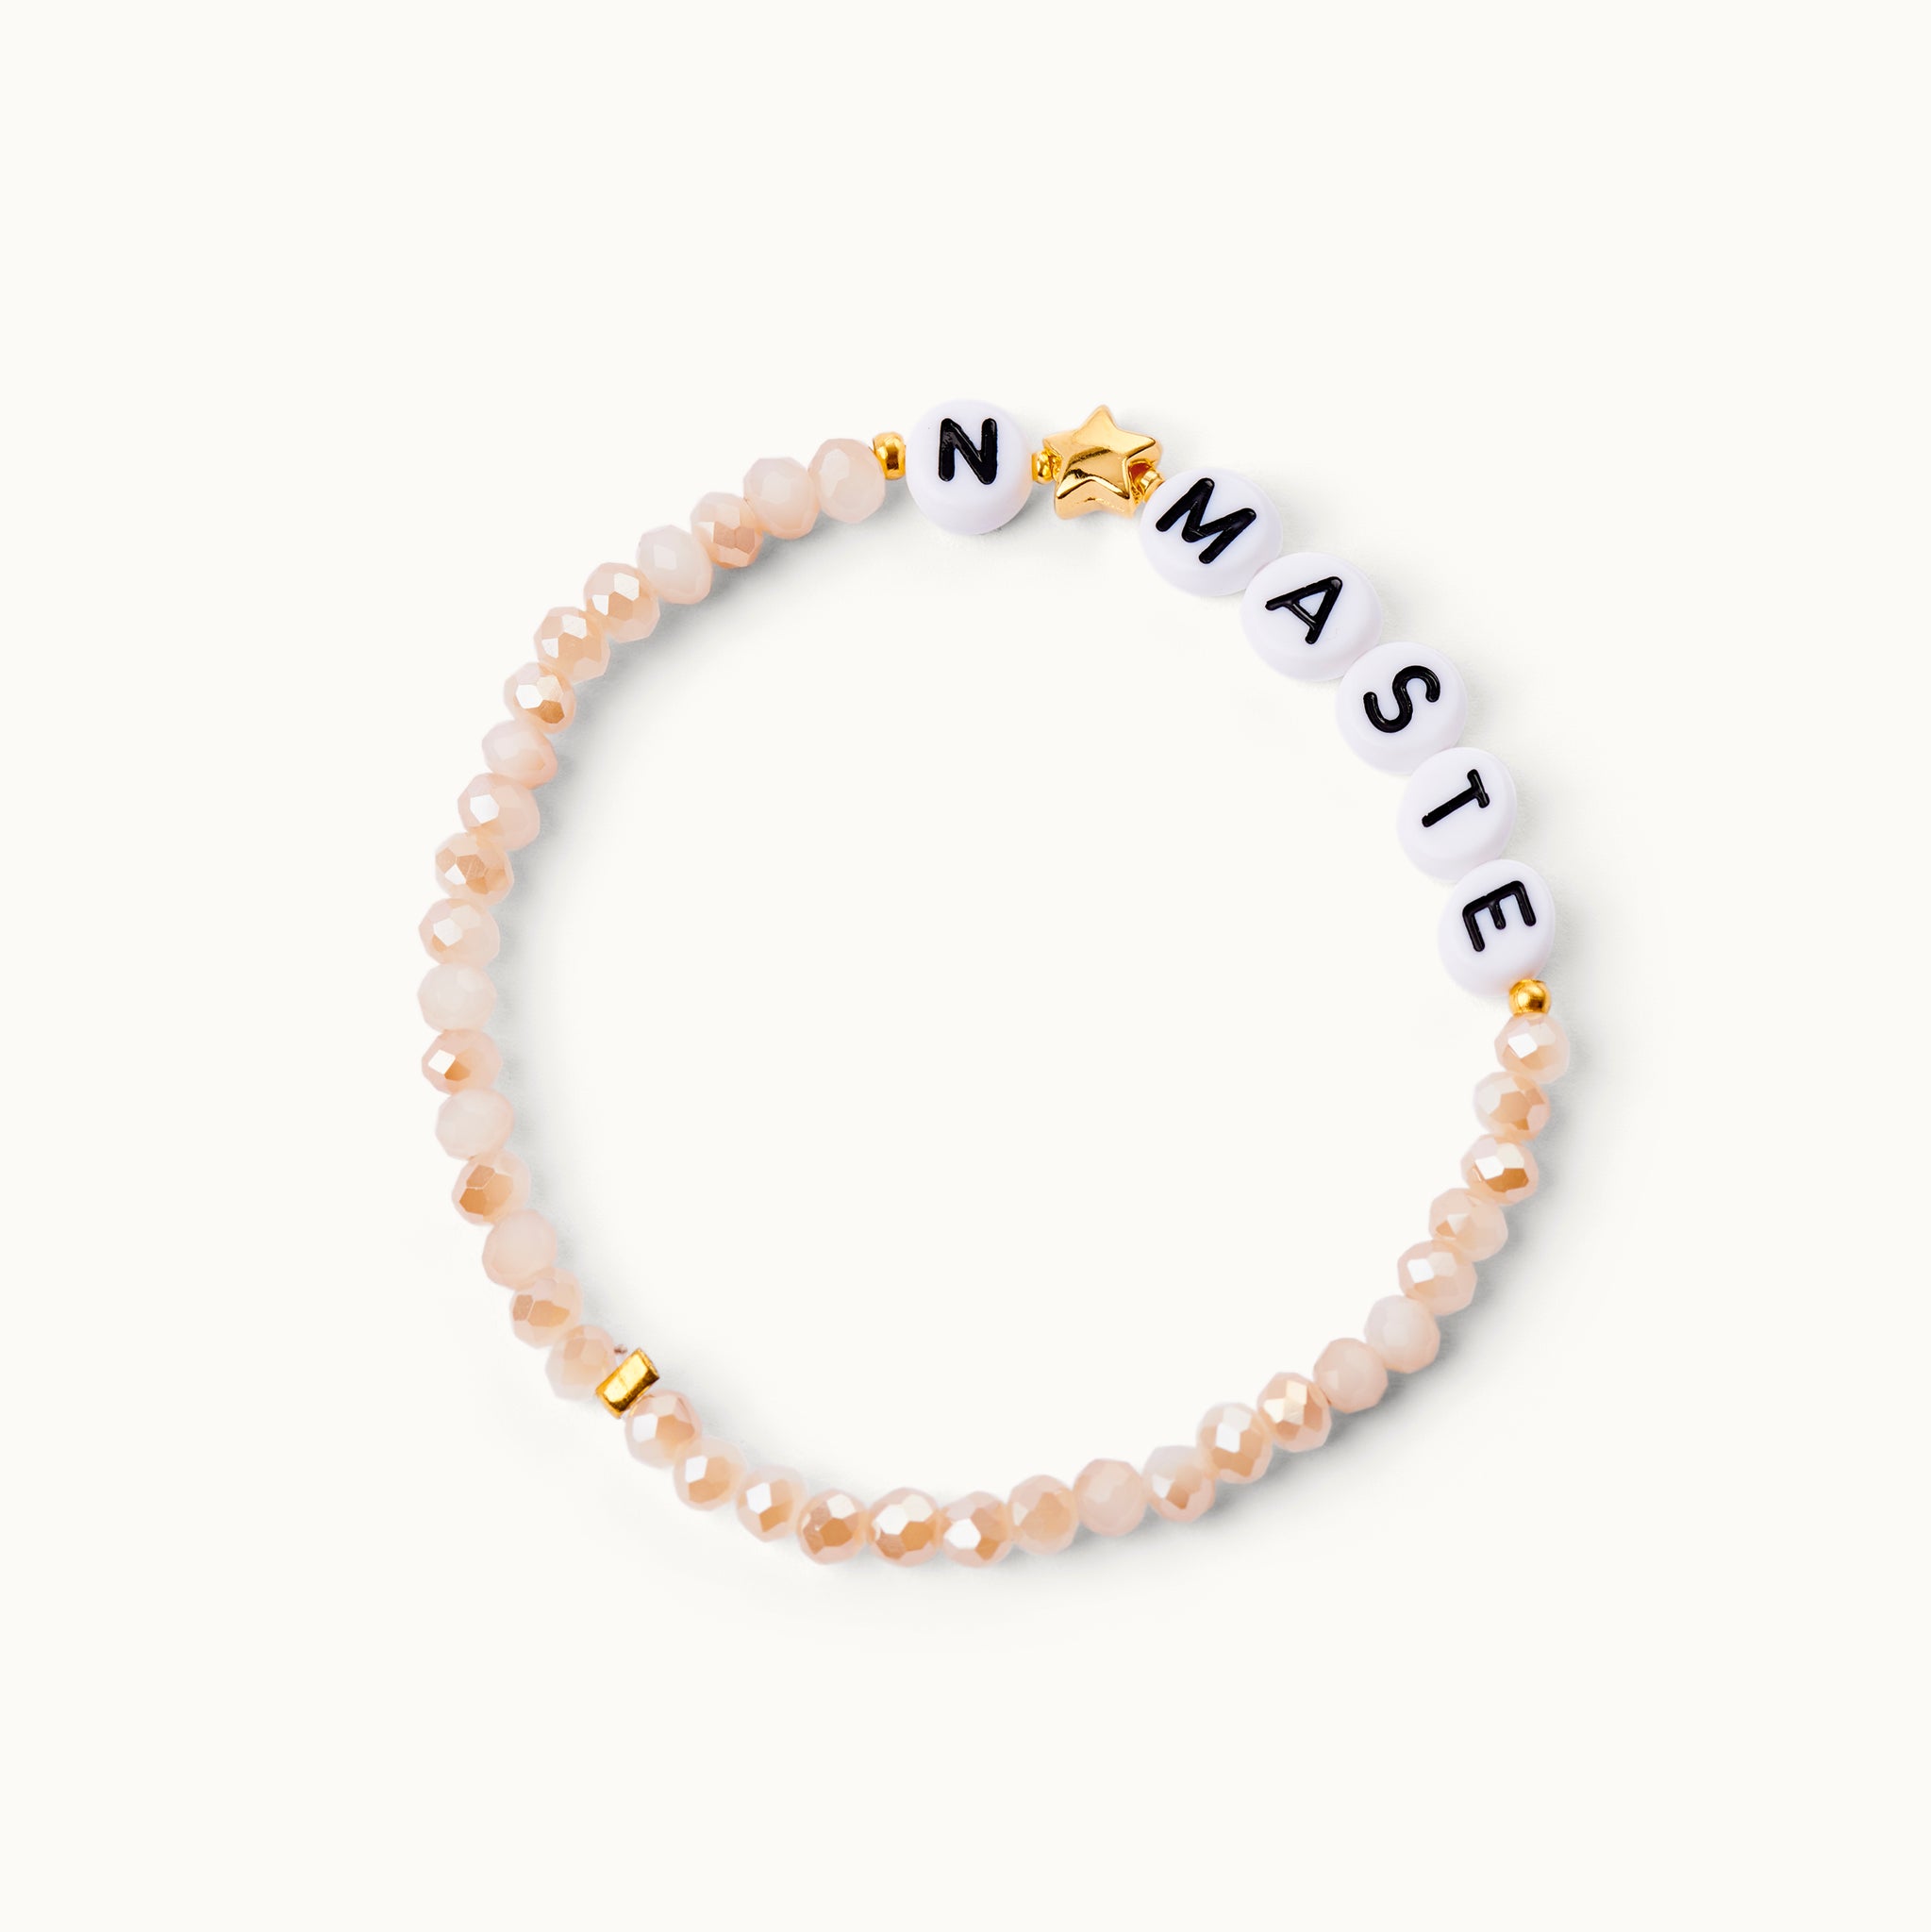 Namaste Glasperlenarmband in Nude-Tönen mit Acryl-Perlen und einem 18 Karat vergoldeten Stern sowie 18 Karat vergoldeten Kugeln. 